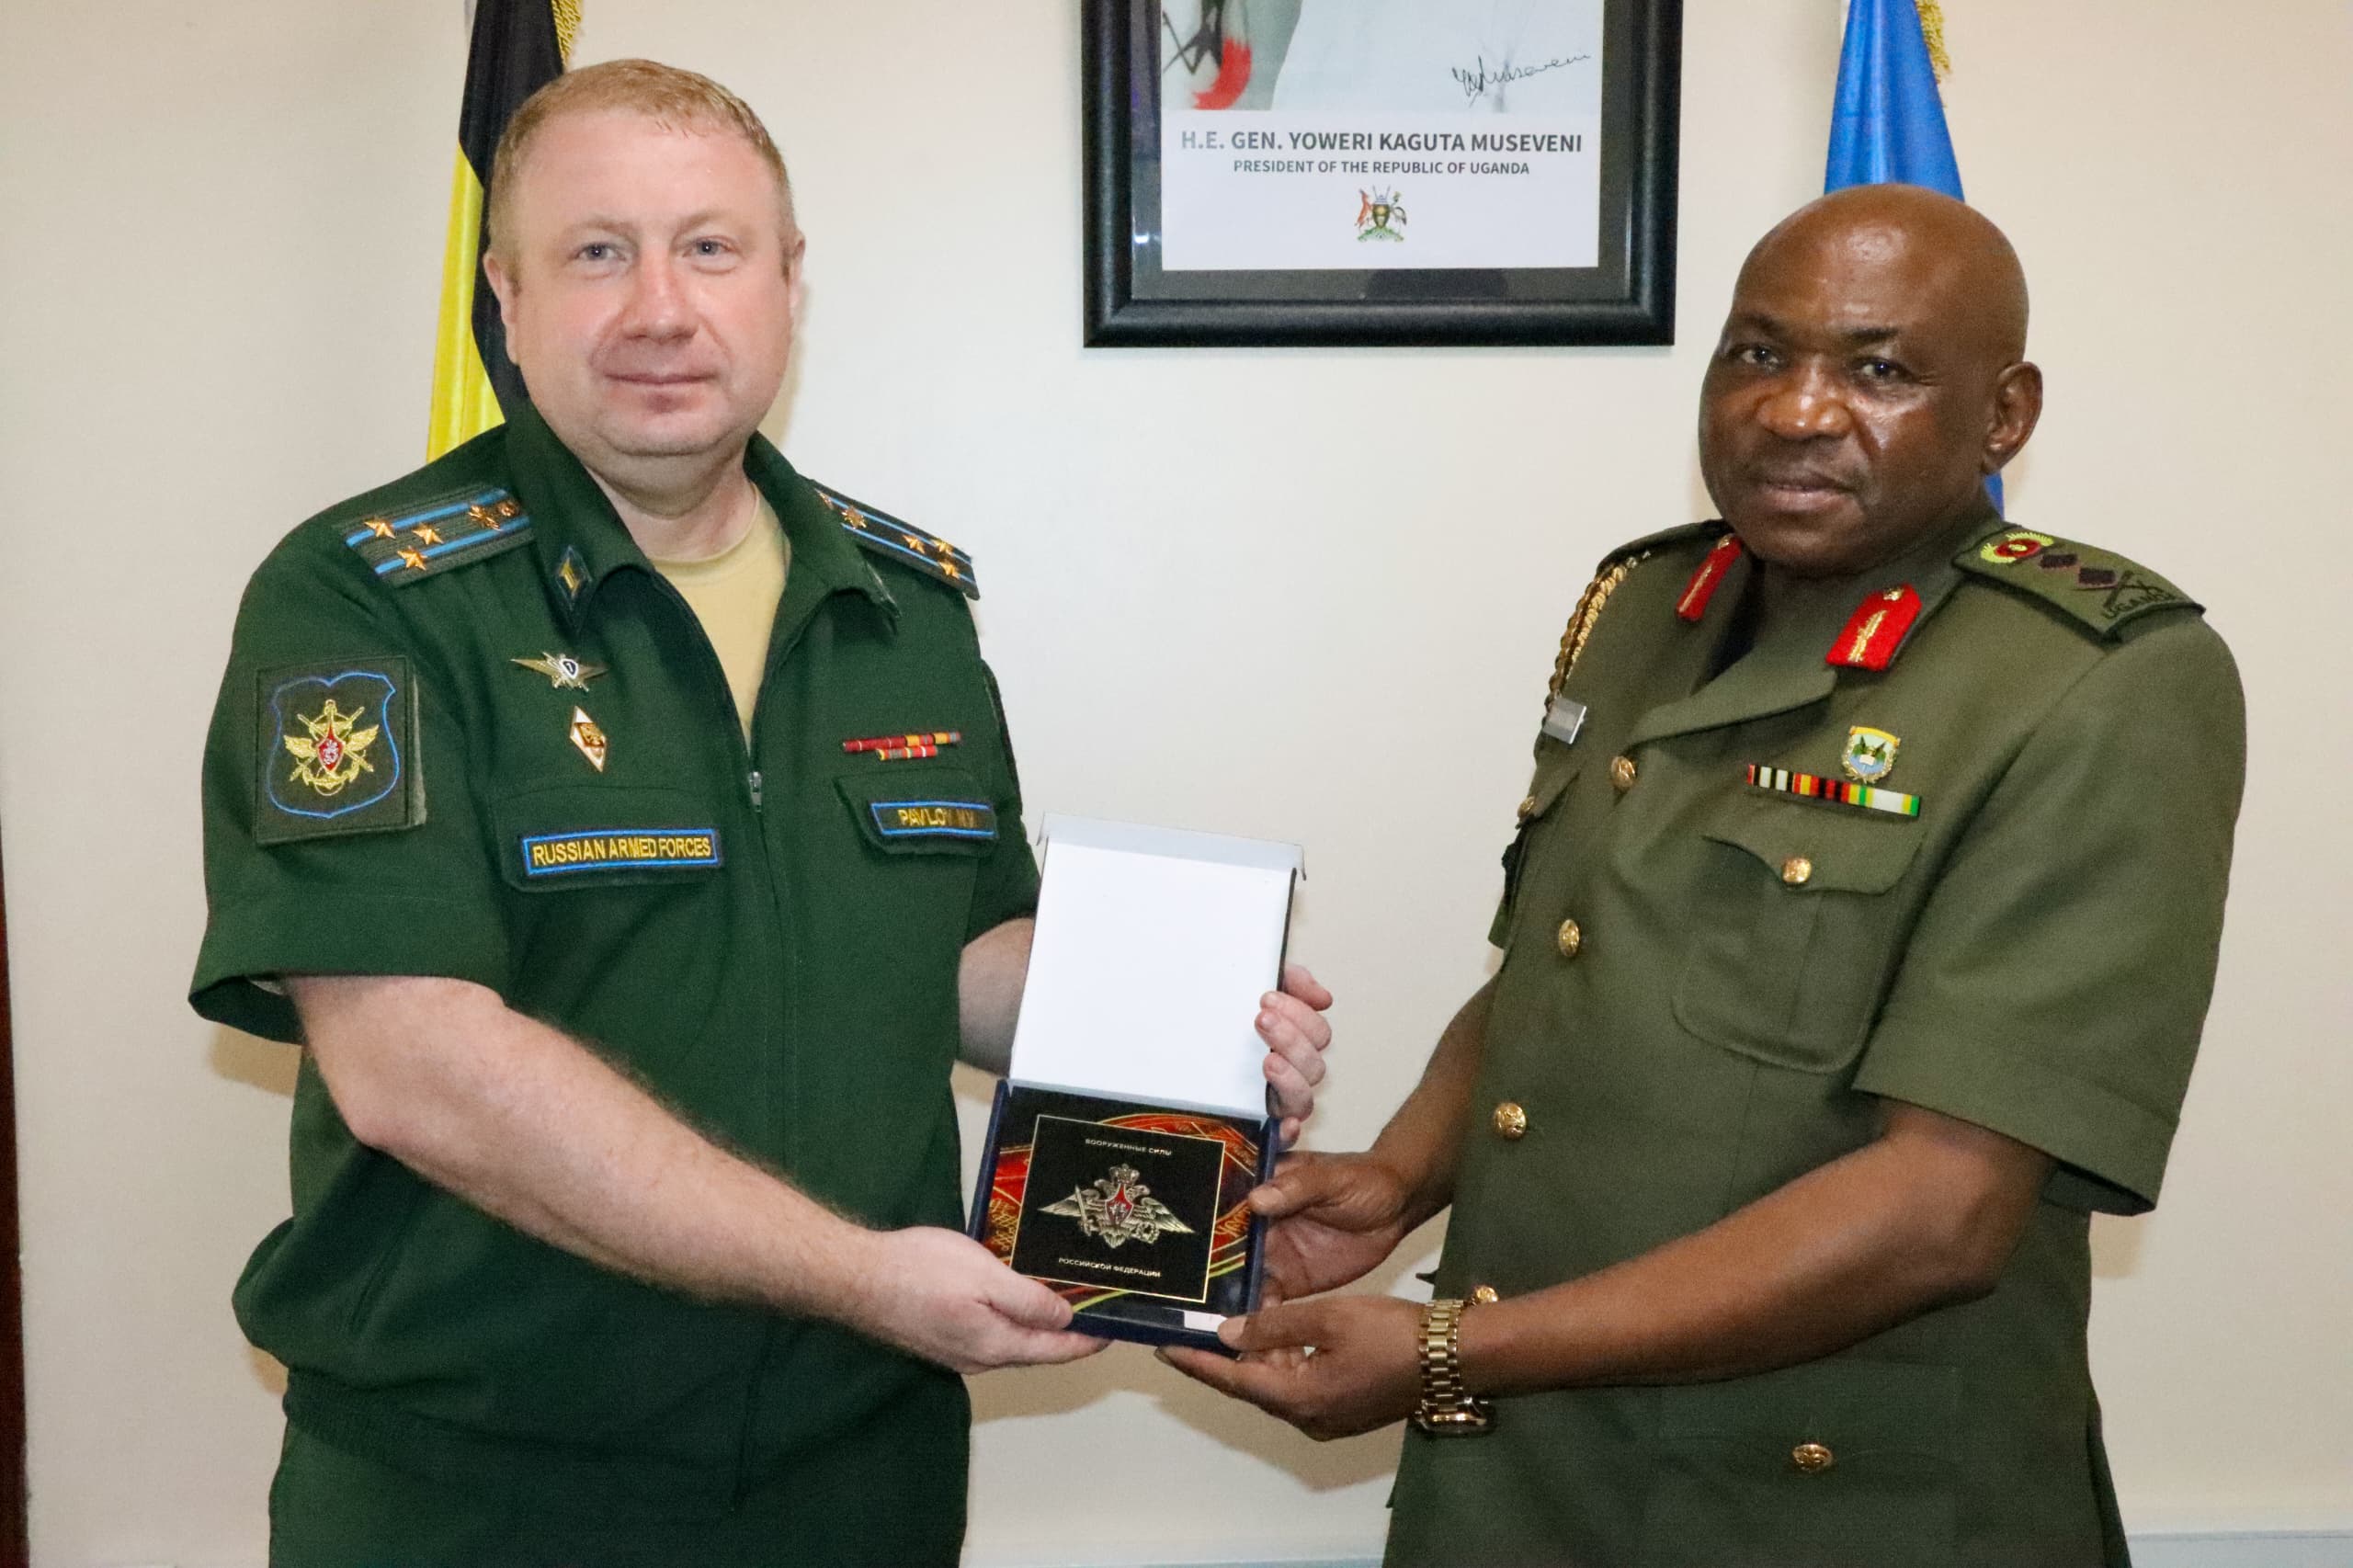 Maj-Gen-Jack-BakasumbaR-receiving-a-souvenir-from-Col-Nikolay-PavlovL